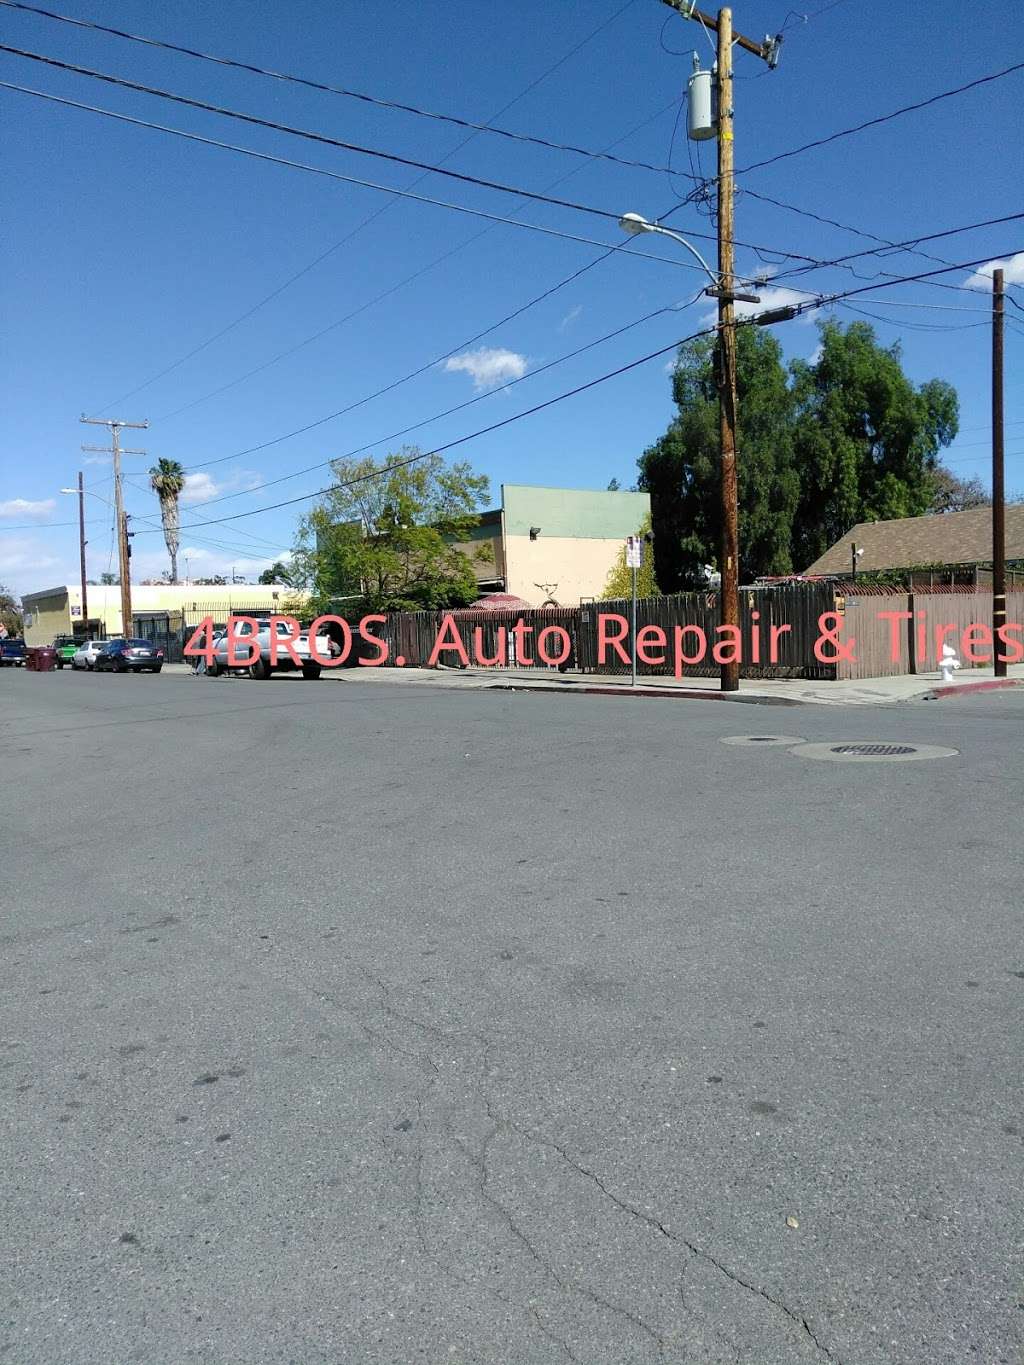 4BROS. Auto Repair & Tires | 1203 E 3rd St, Santa Ana, CA 92701 | Phone: (714) 227-8821